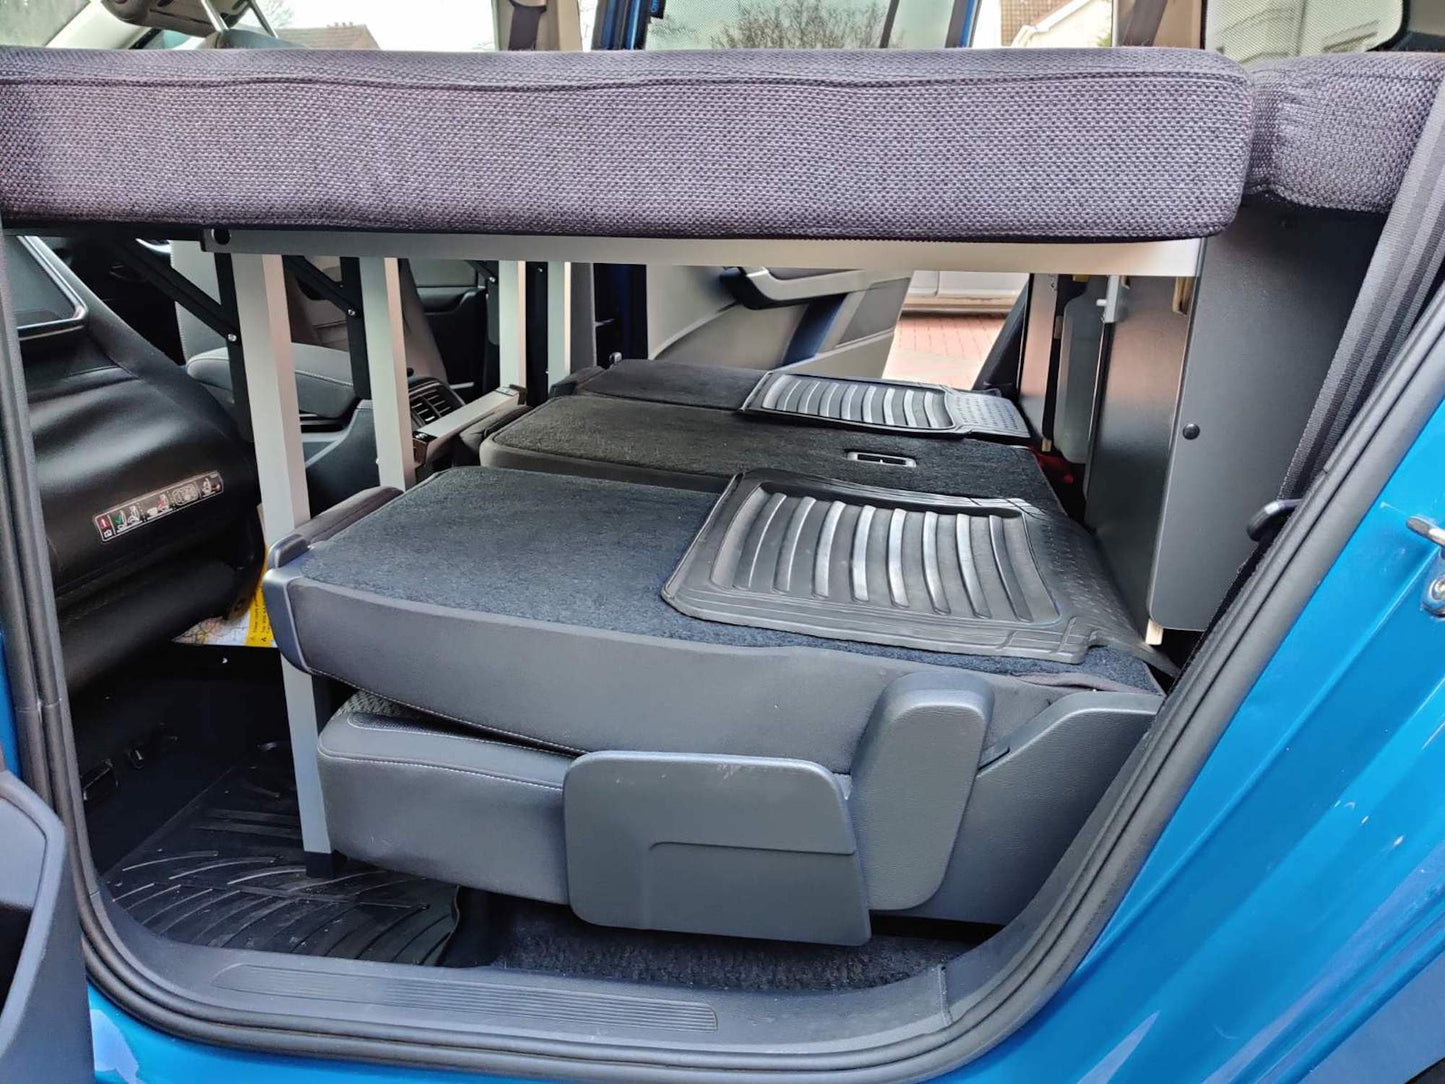 Volkswagen Touran (2015→) campingbox